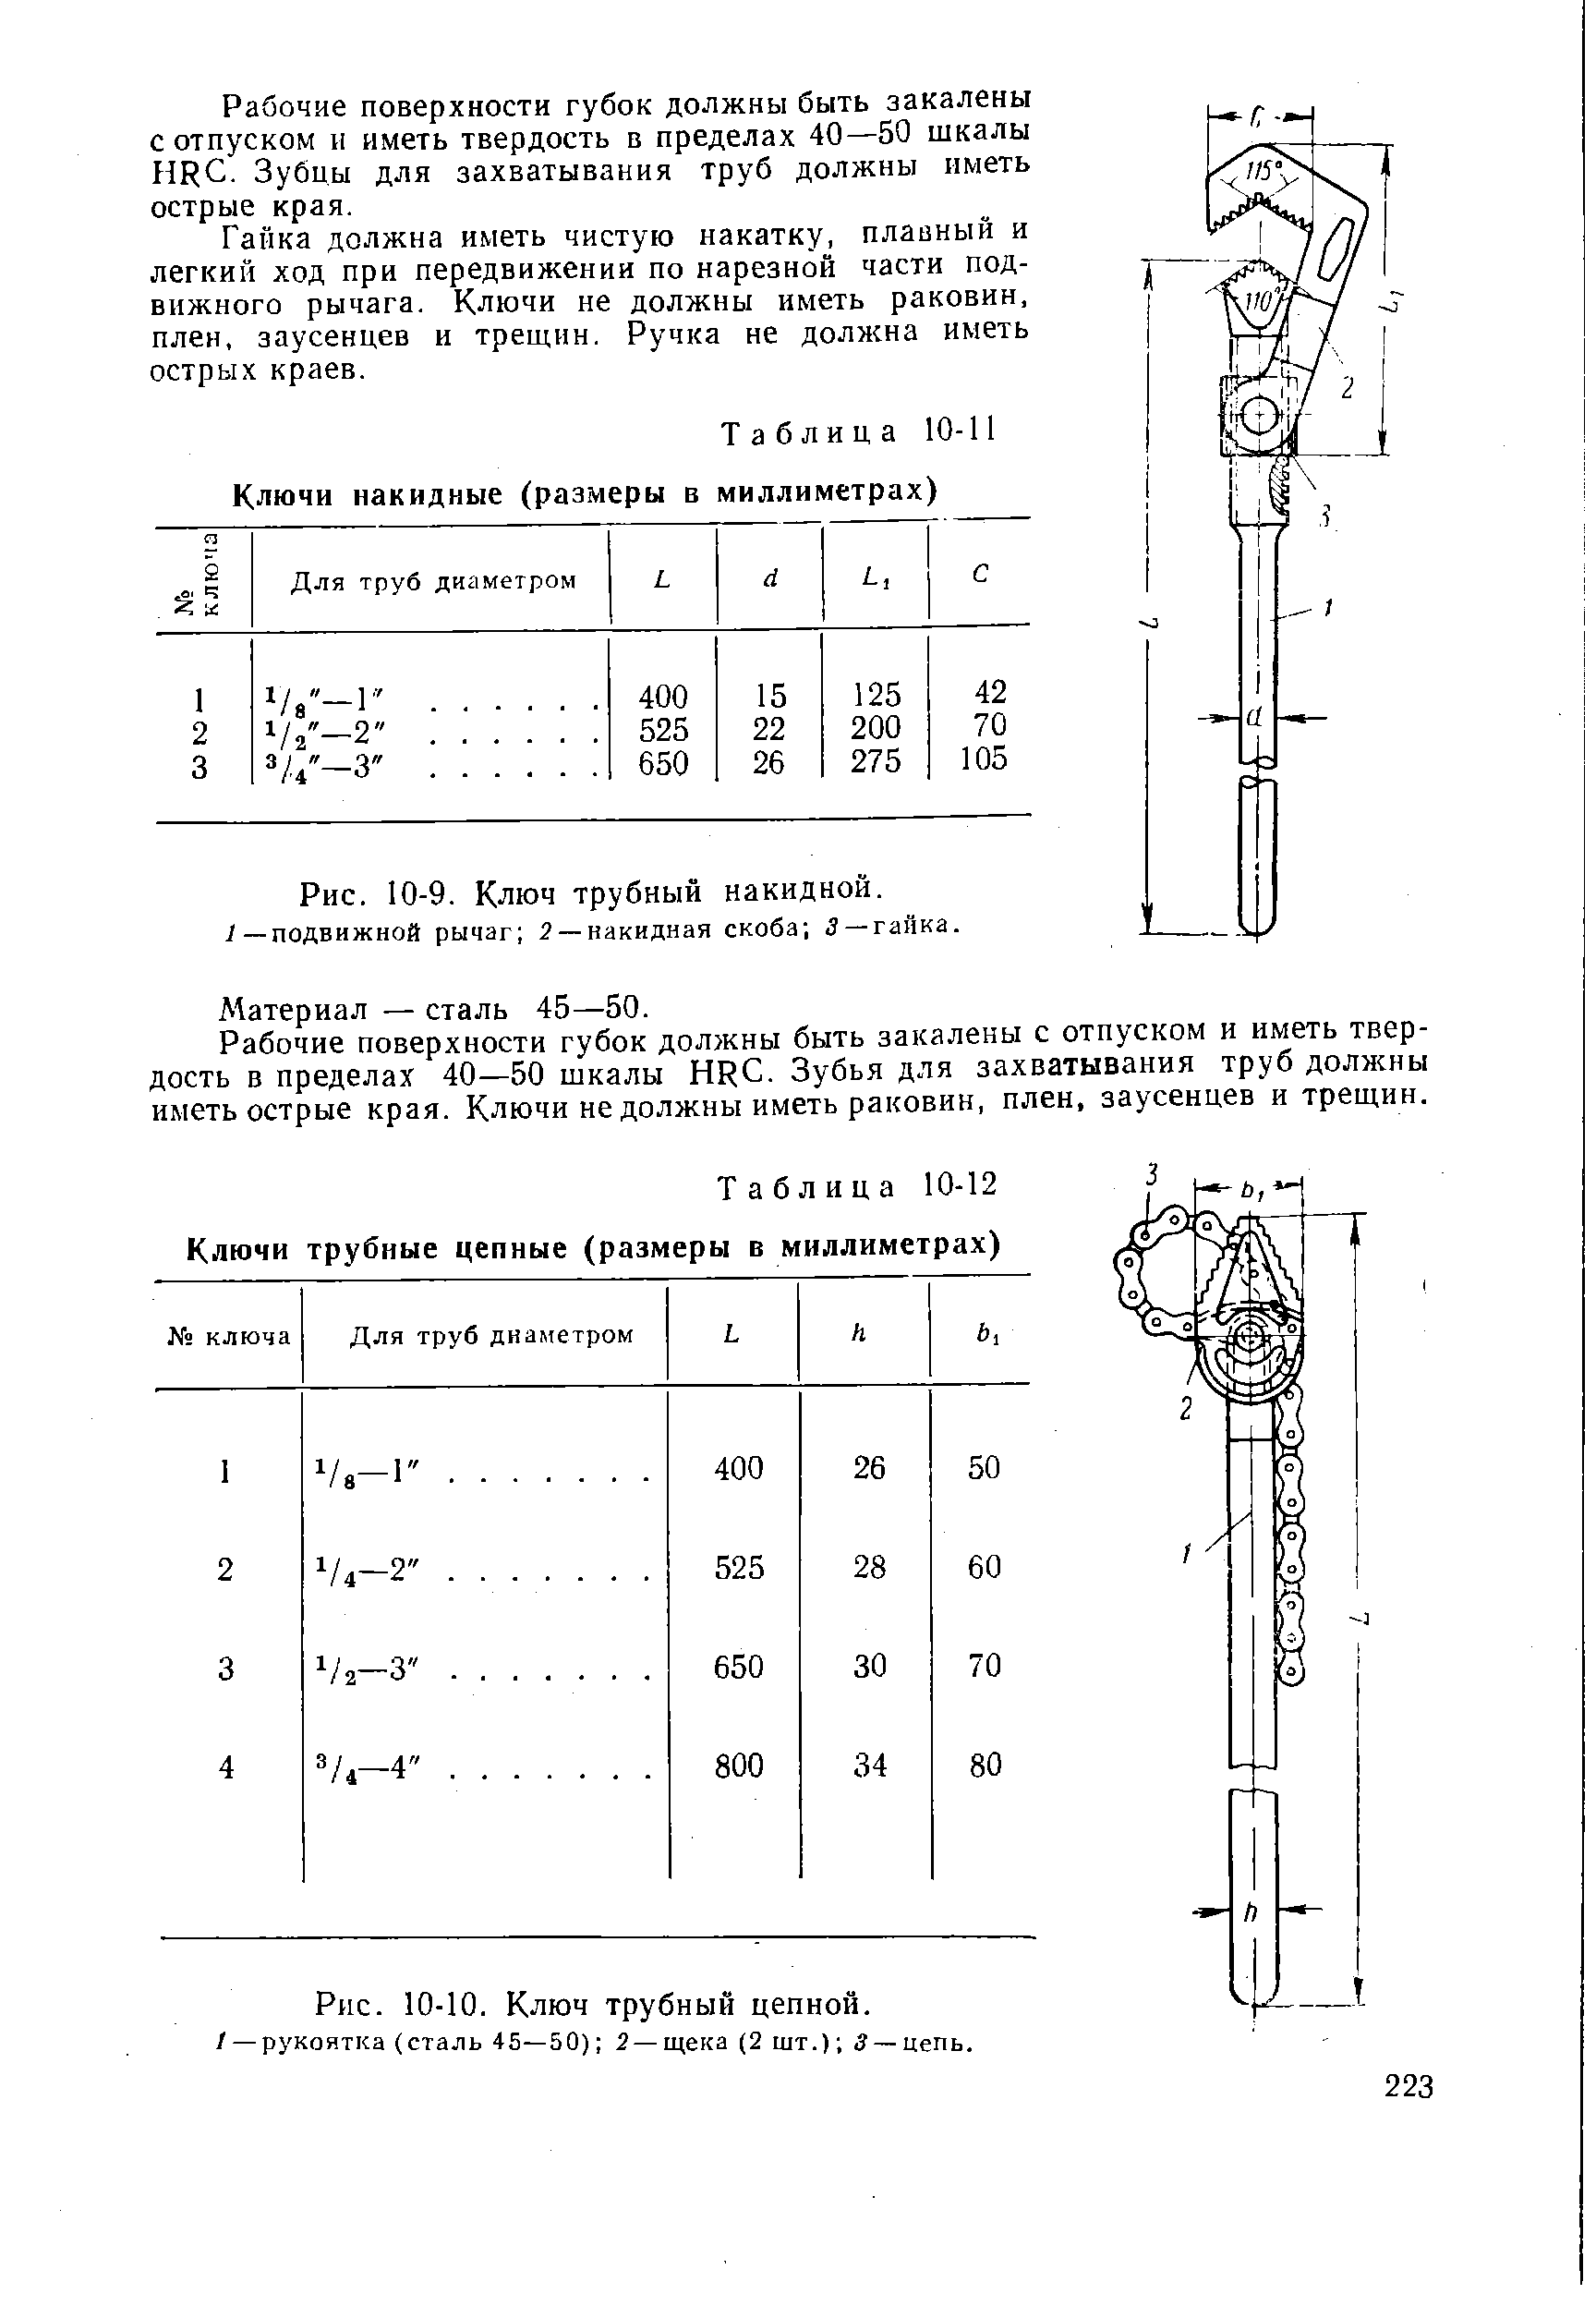 Таблица 10-12 Ключи трубные цепные (размеры в миллиметрах)
